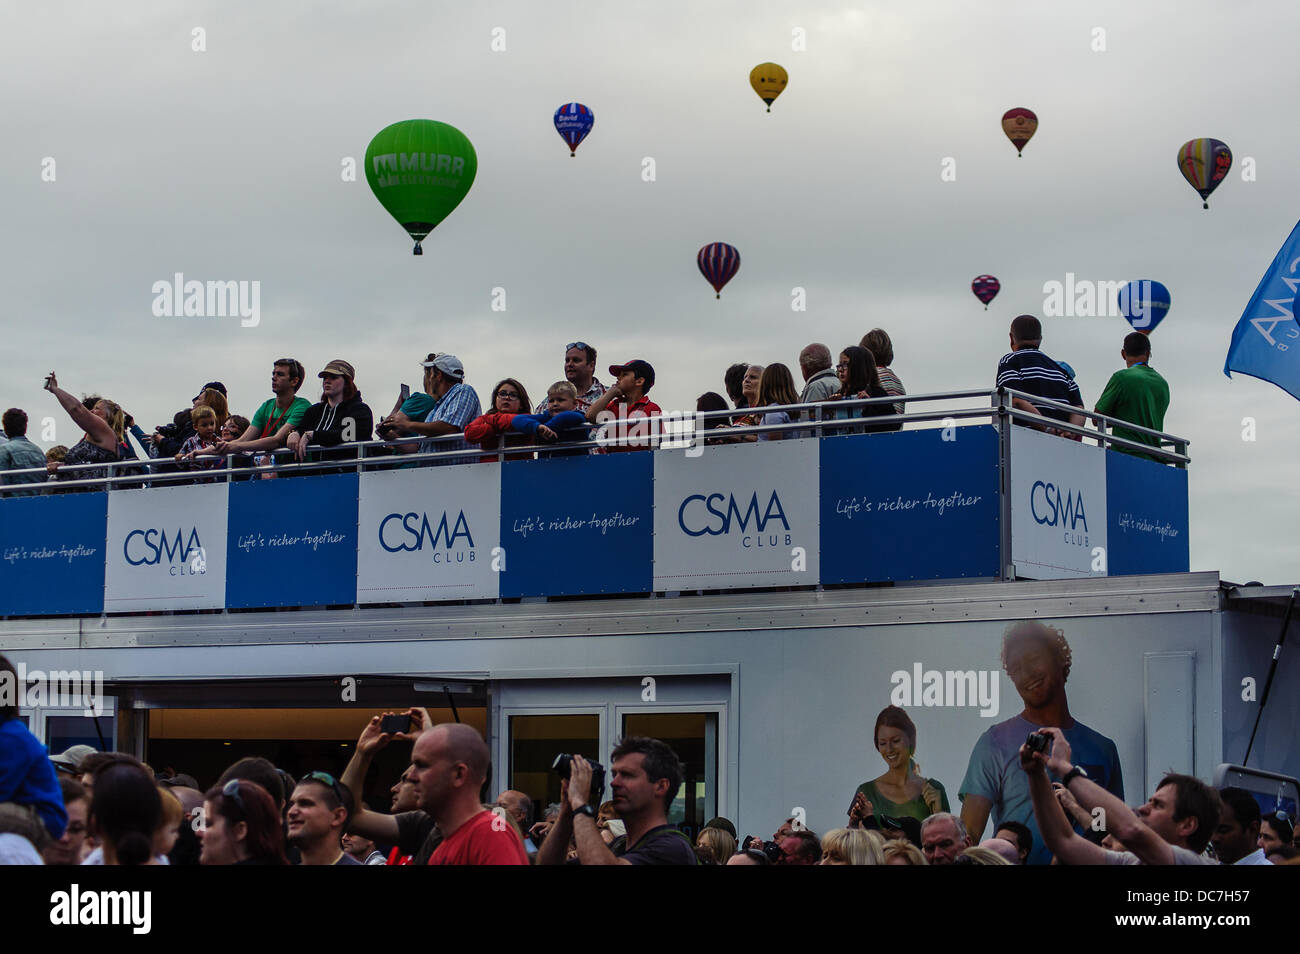 Bristol UK. 10 août, 2013. Le Bristol International Balloon Fiesta est maintenant dans sa 35e année et est le plus important d'Europe ballooning Banque D'Images